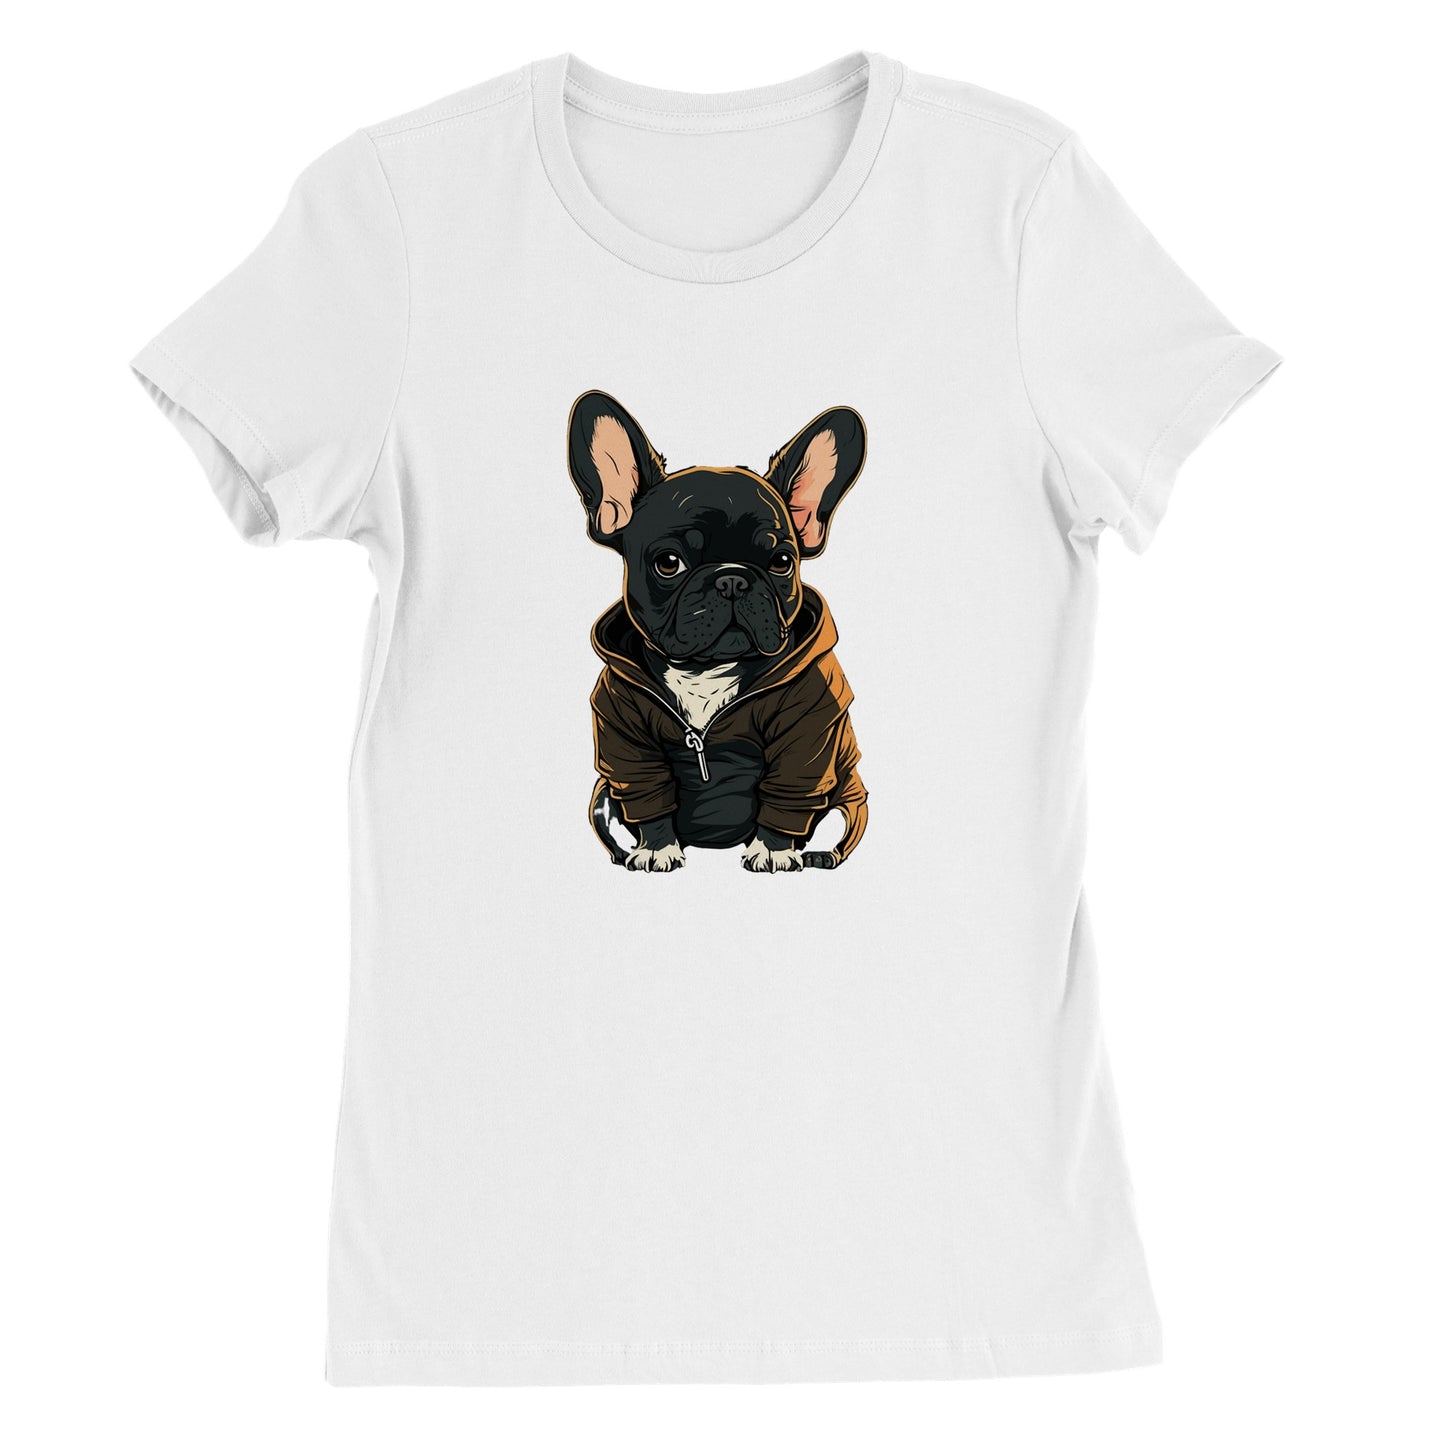 Dog T-shirt - French Bulldog Dark Hoodie Artwork - Premium Women's T-shirt 